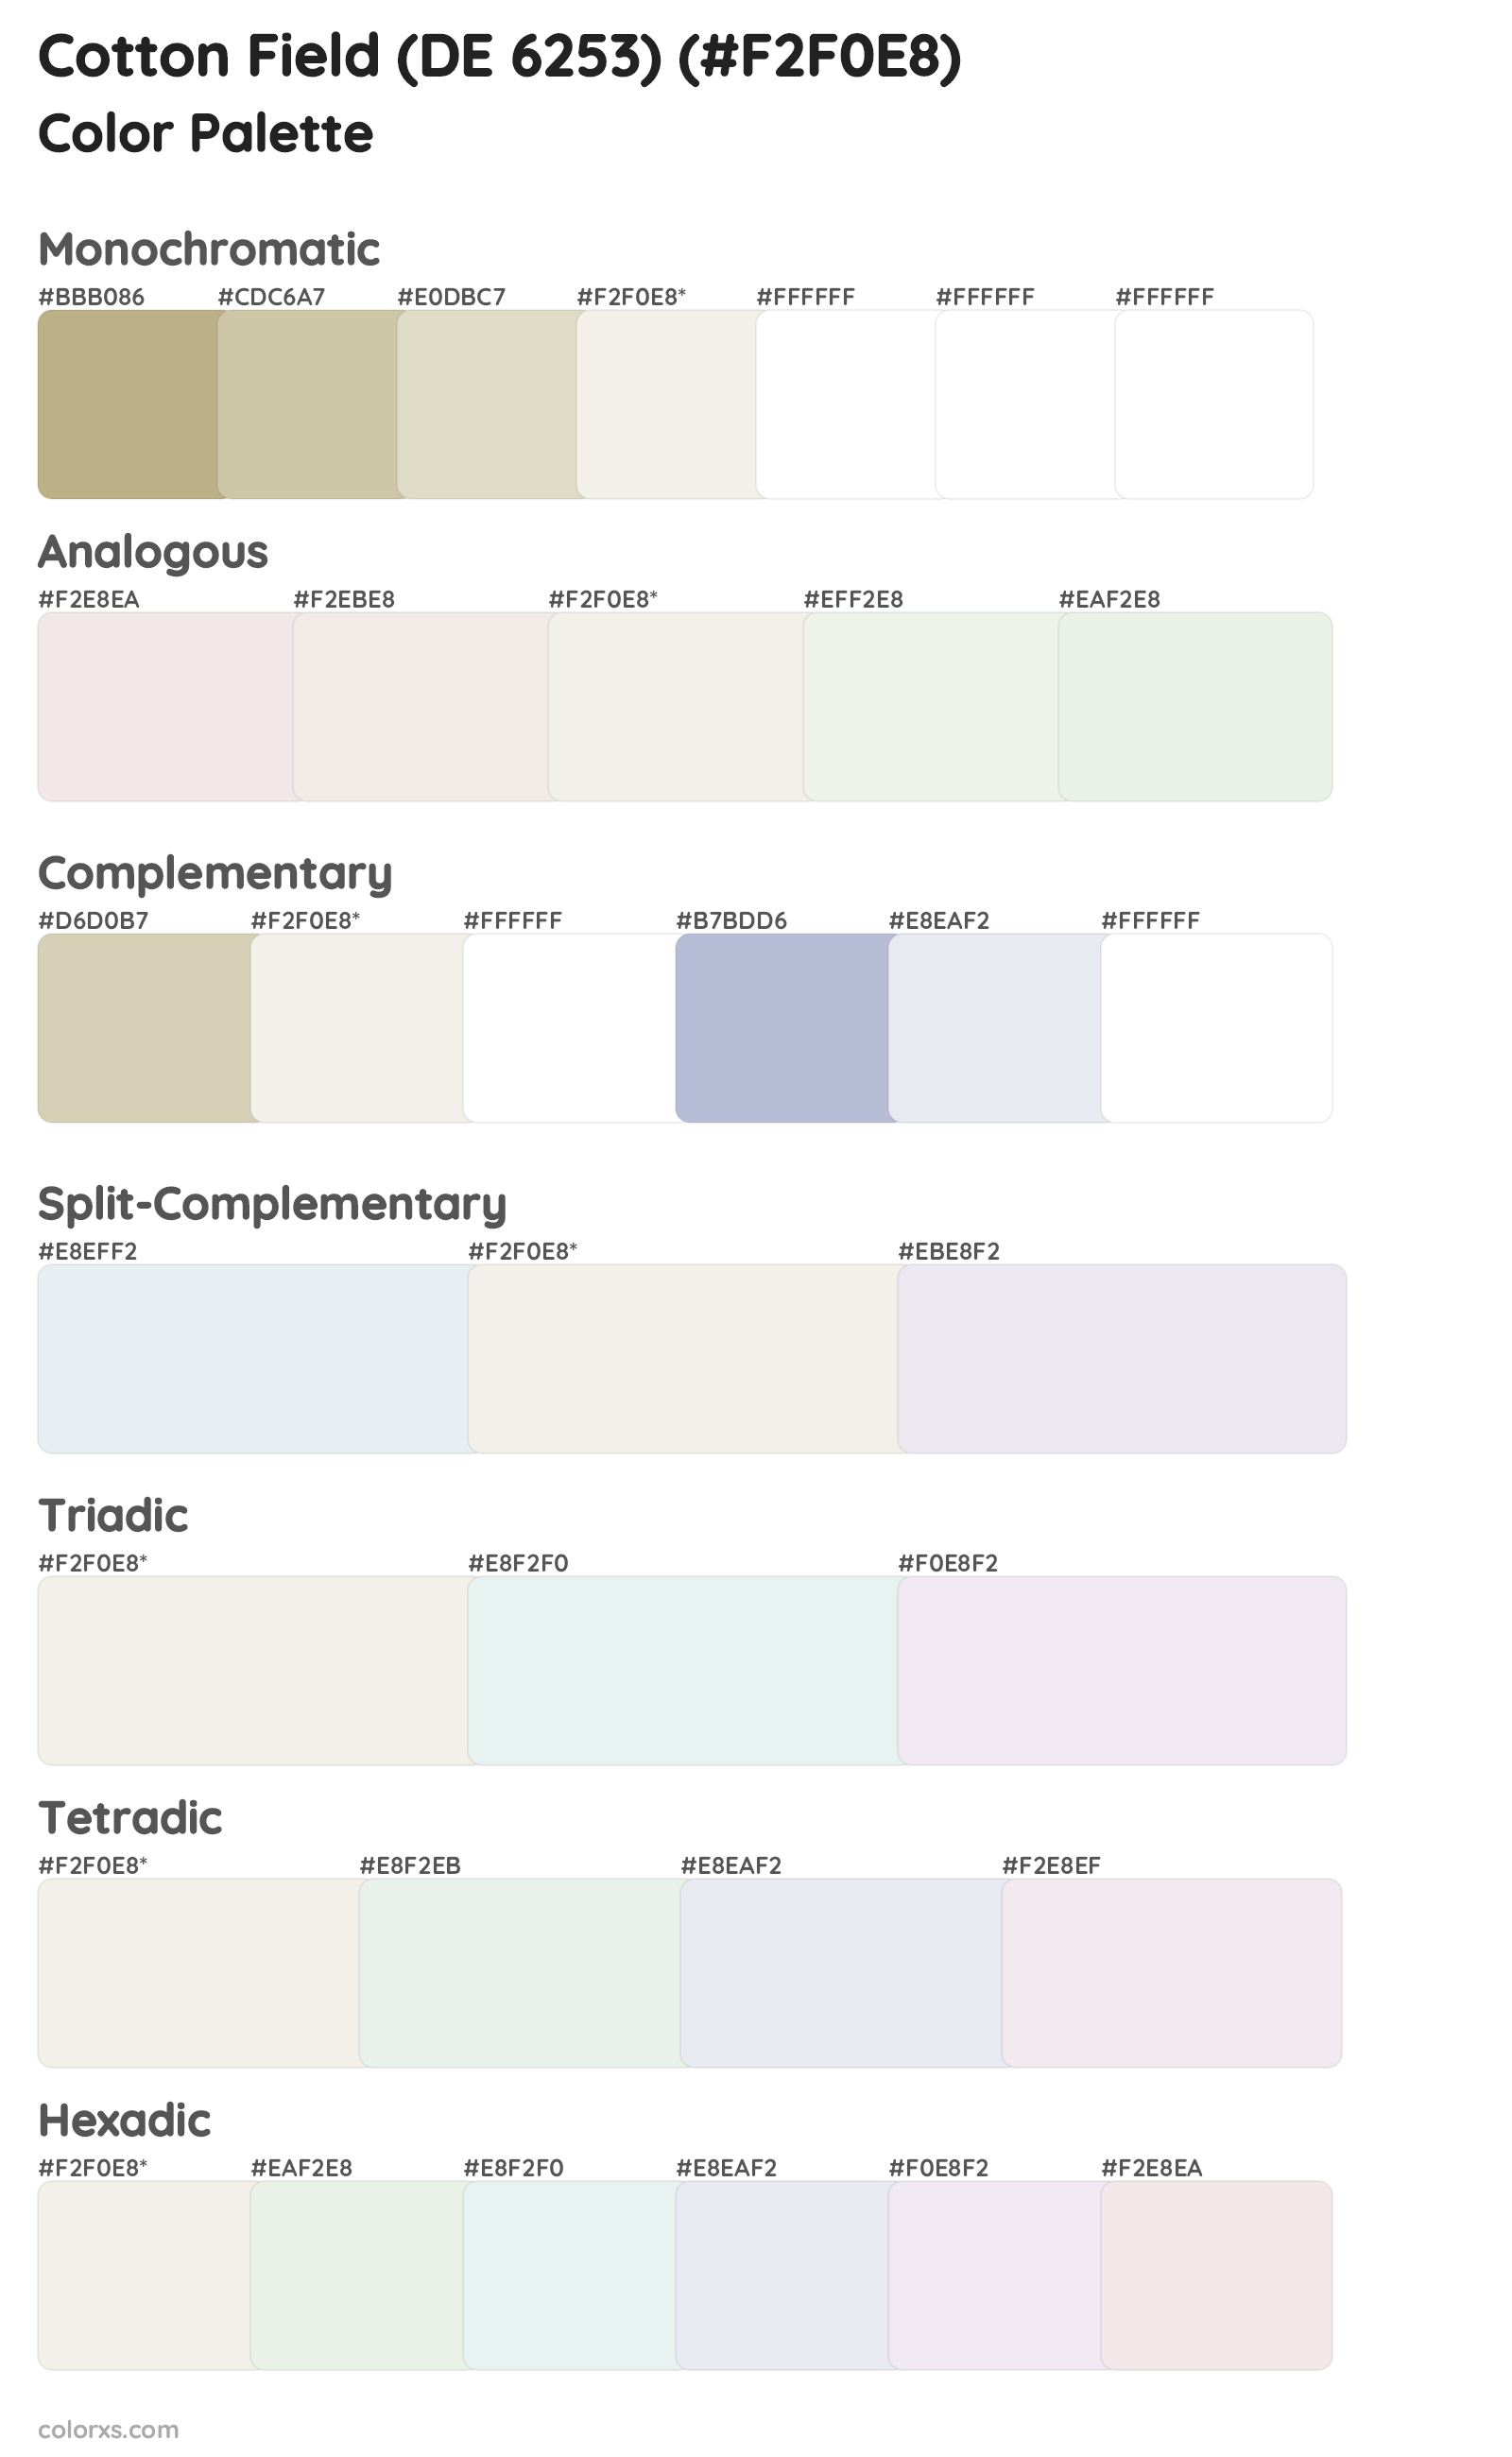 Cotton Field (DE 6253) Color Scheme Palettes